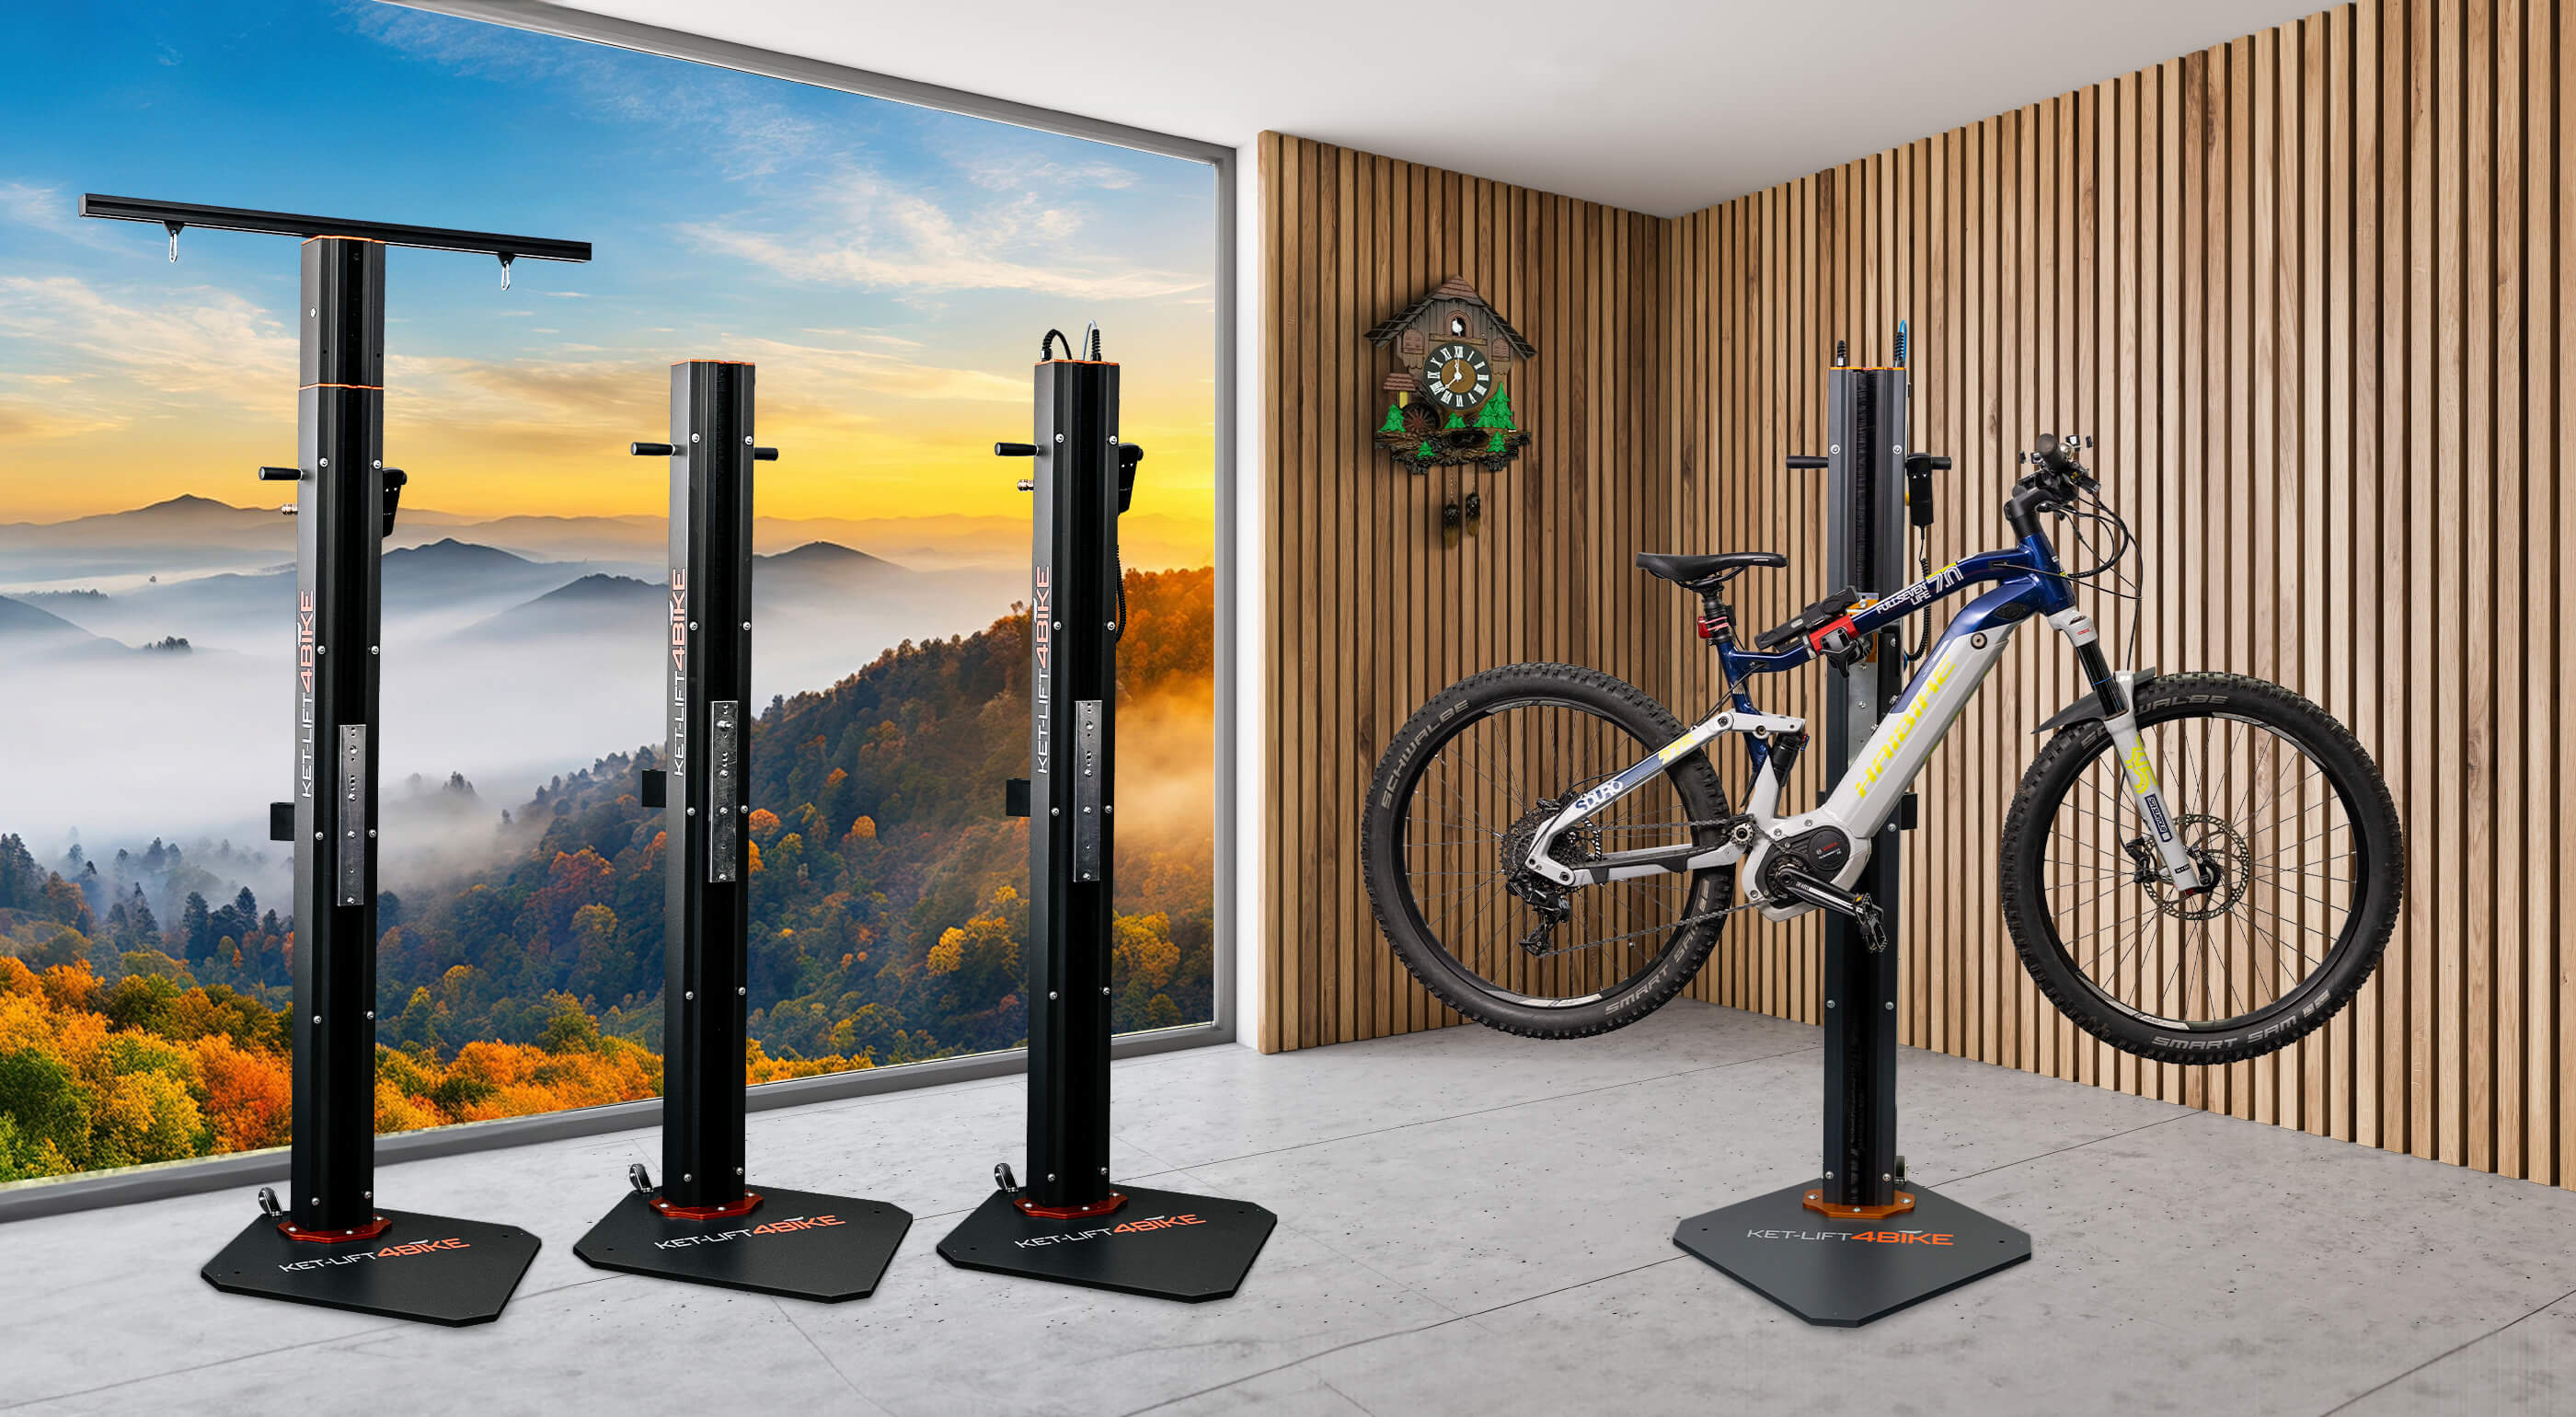 https://www.bike-repair-stand.com/media/electric-bike-repair-stand-e-bike-room-black-forest-view.jpg